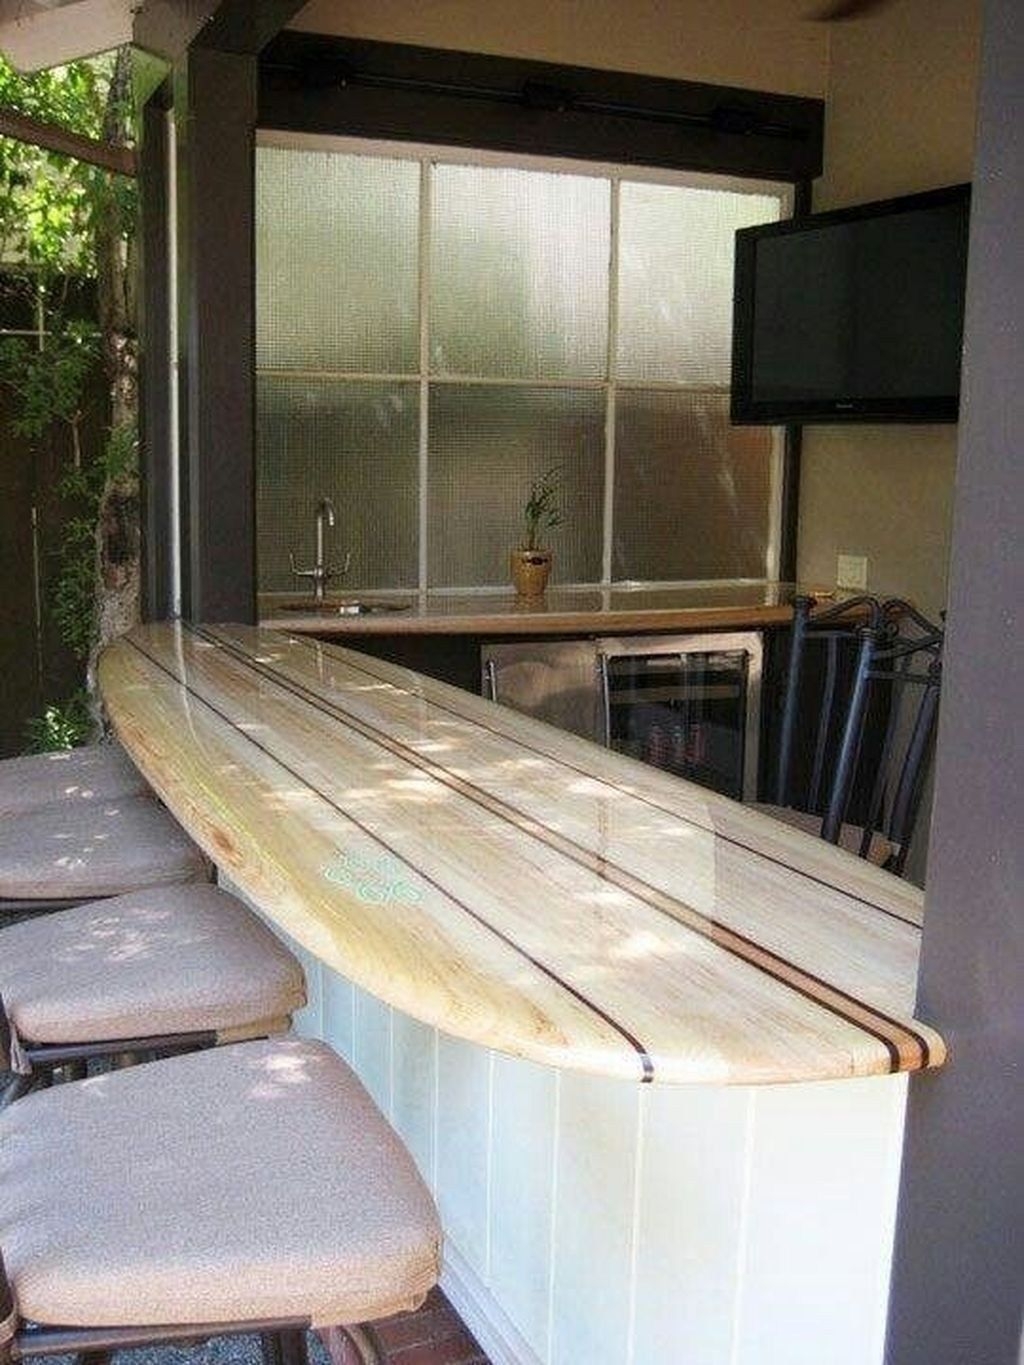 Long breakfast bar table